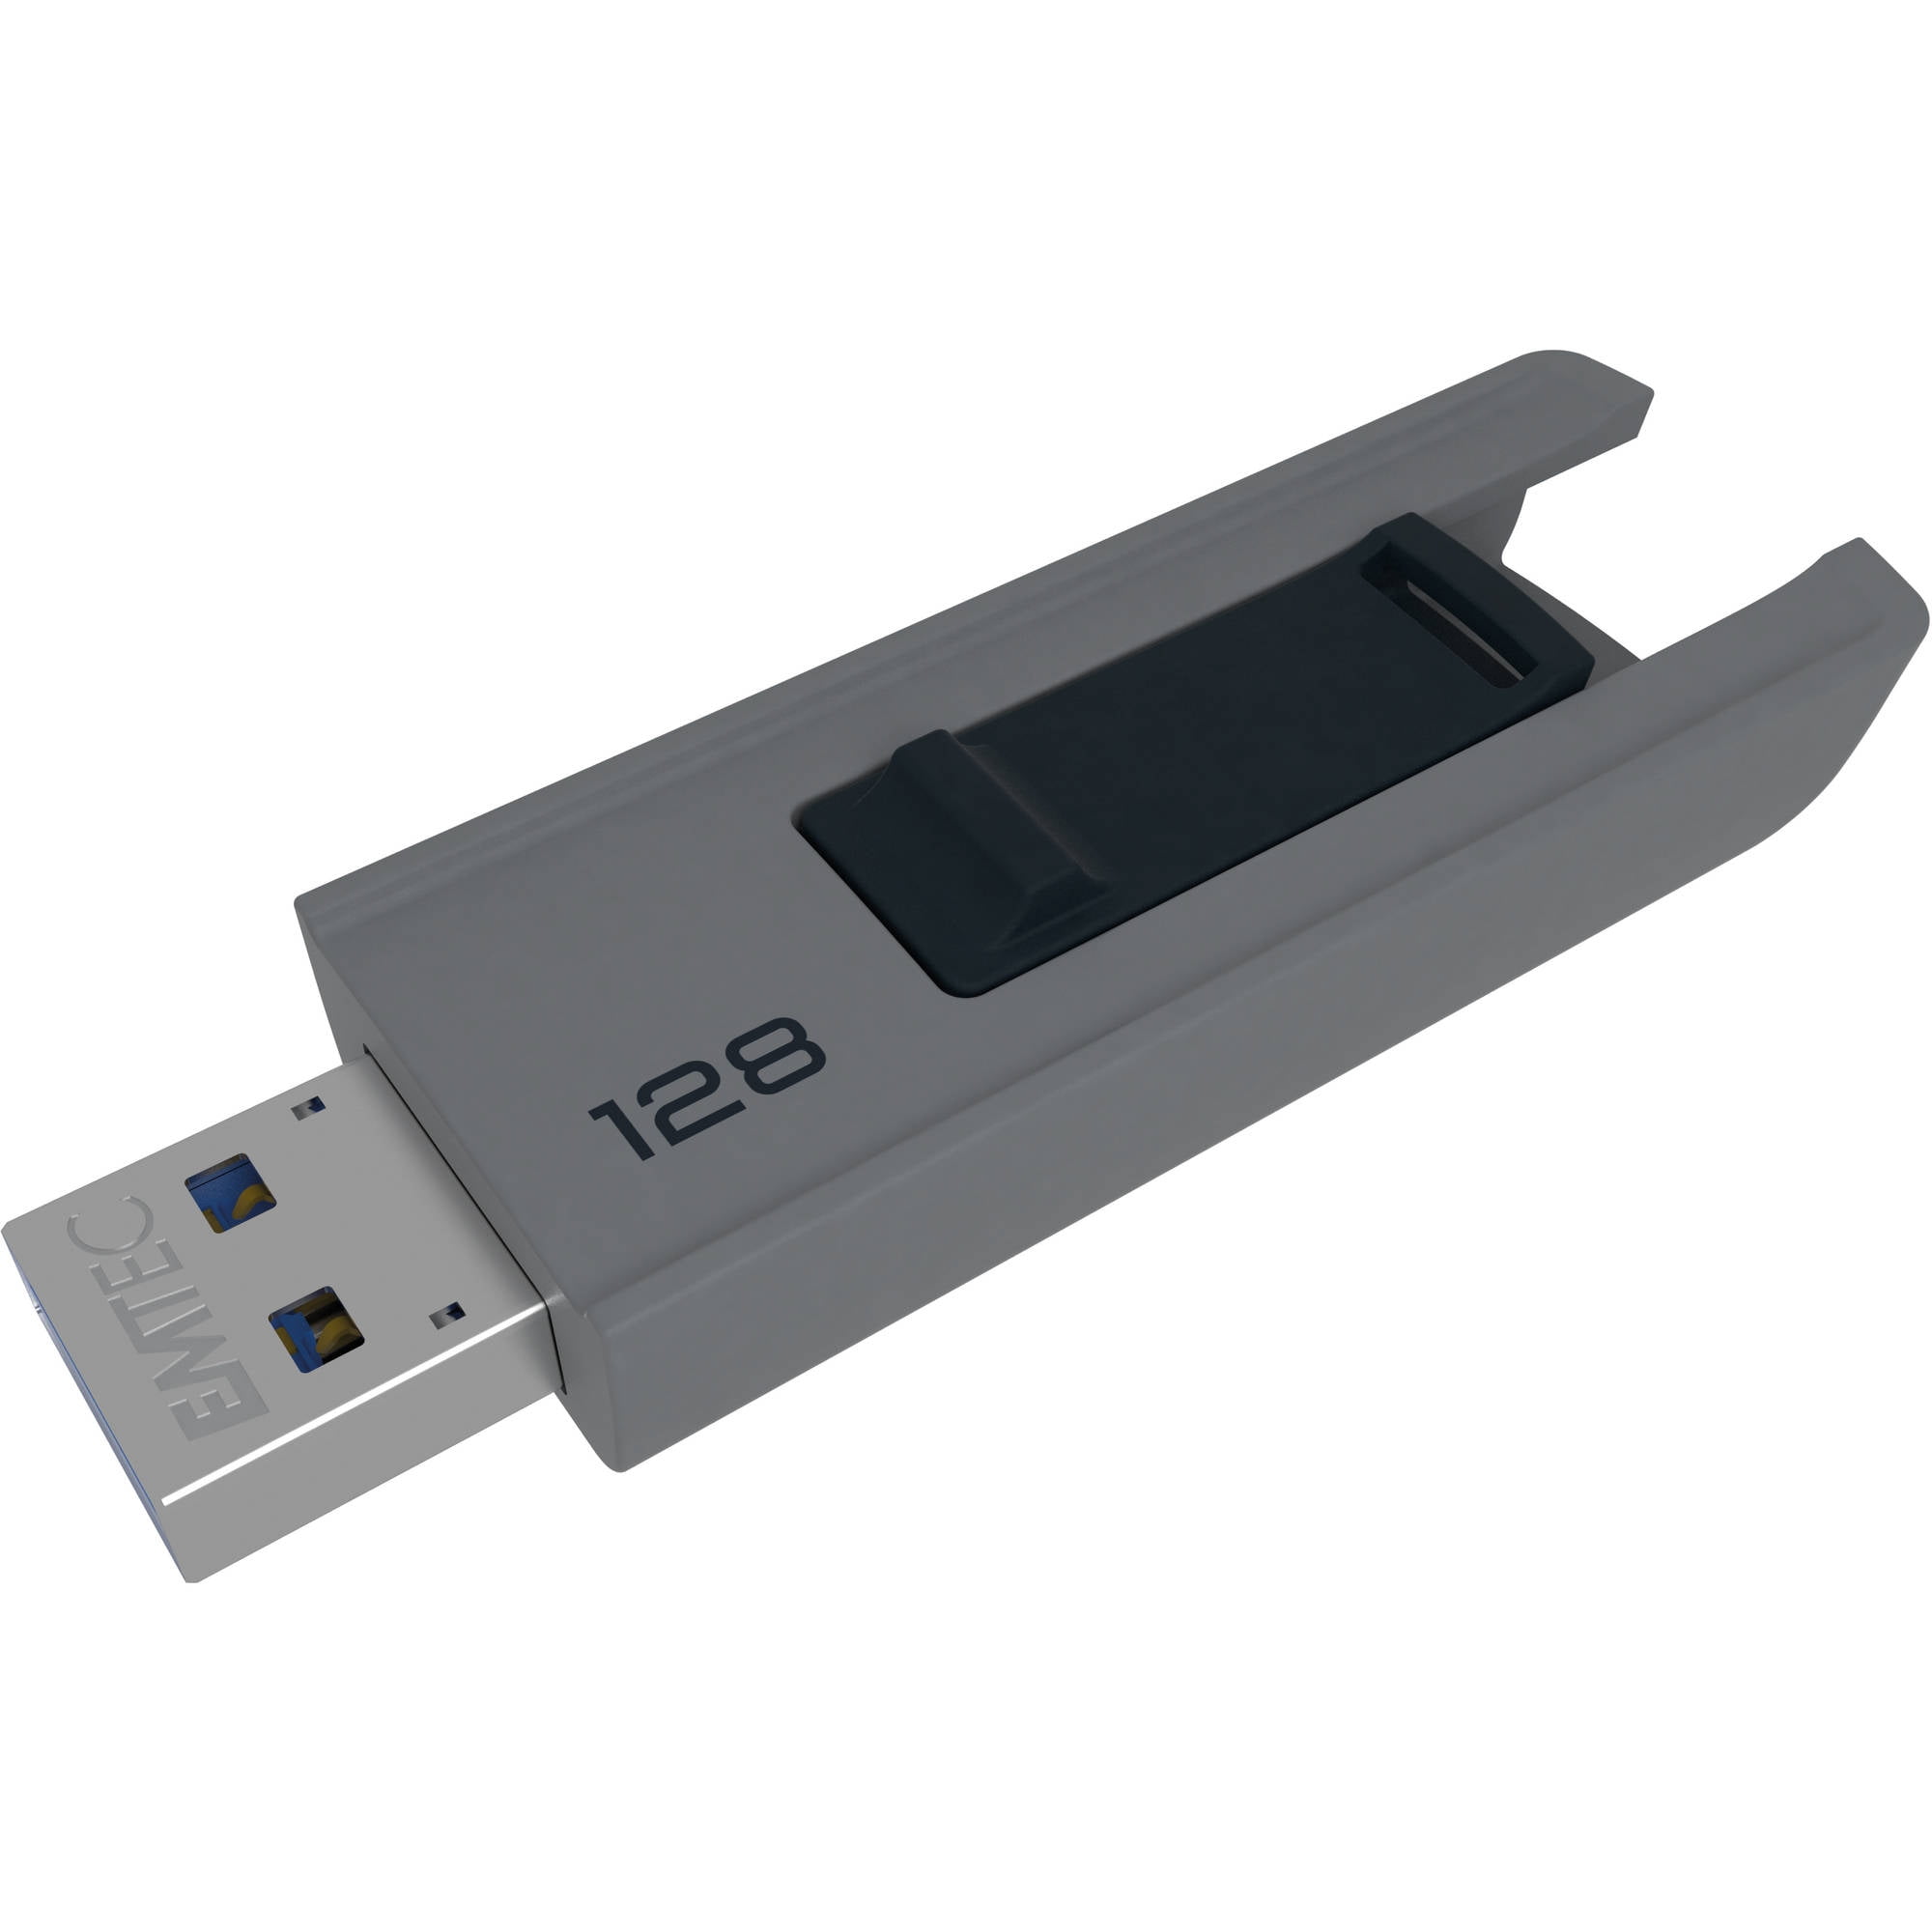 Picture of Emtec ECMMD128GB253 Slide 128 GB USB 3.0 B253 Flash Drive